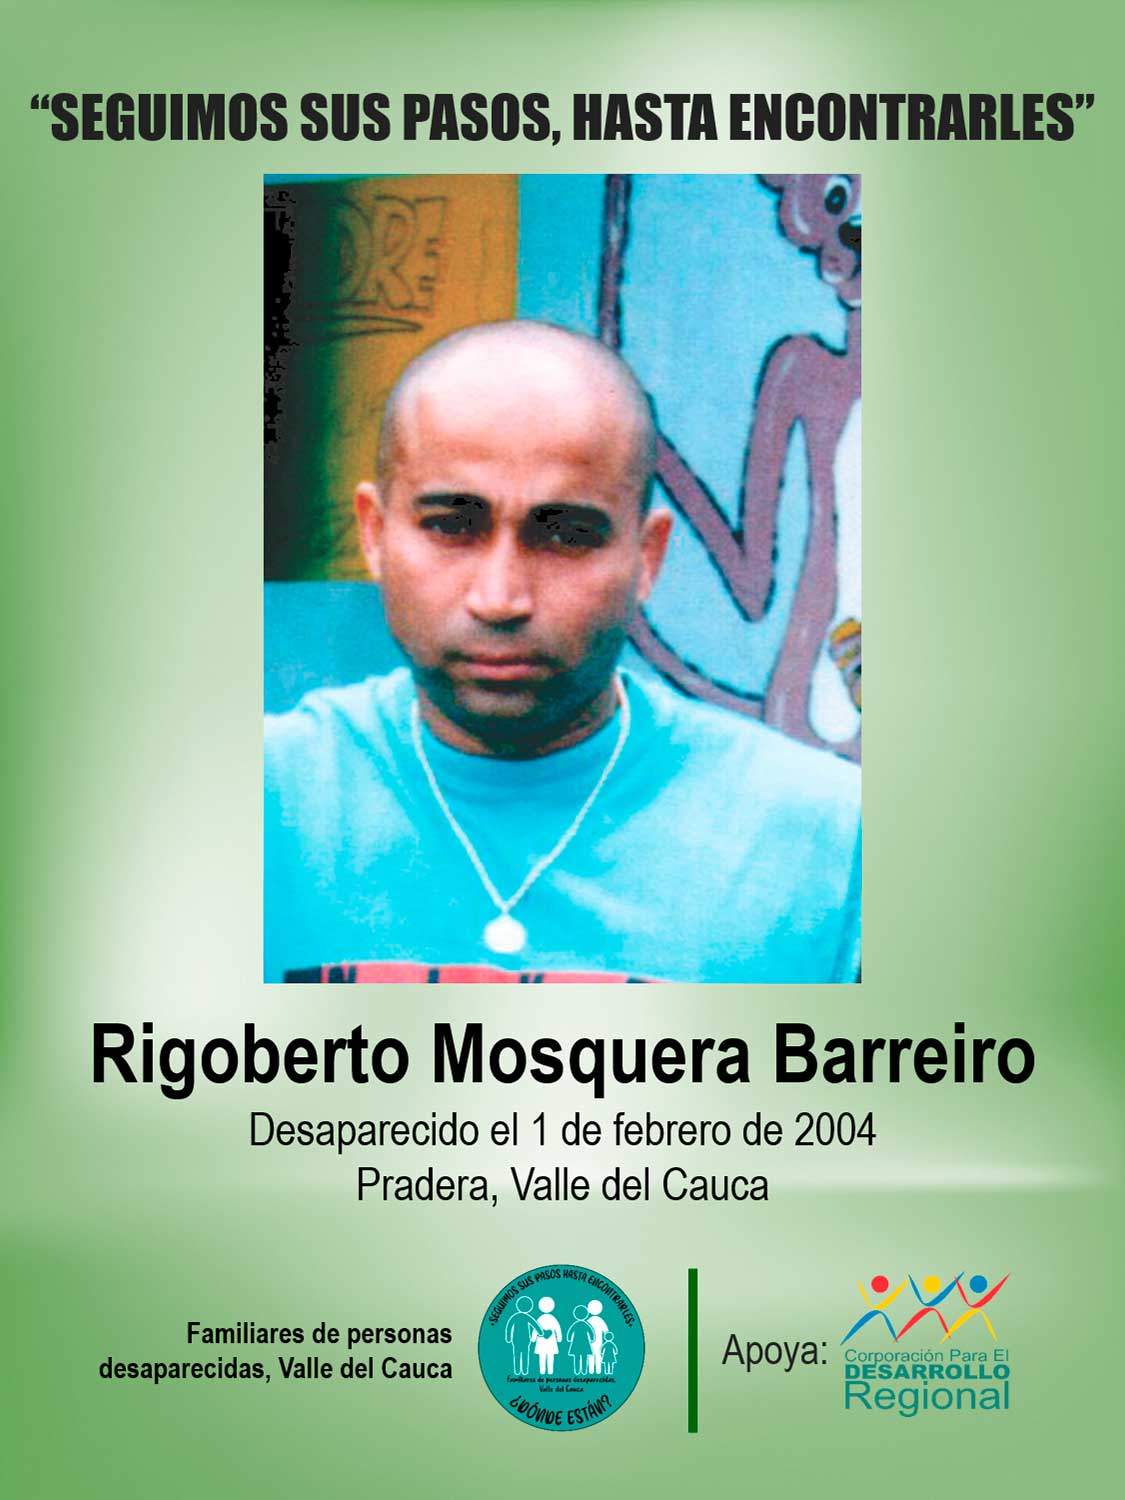 Rigoberto Mosquera Barreiro